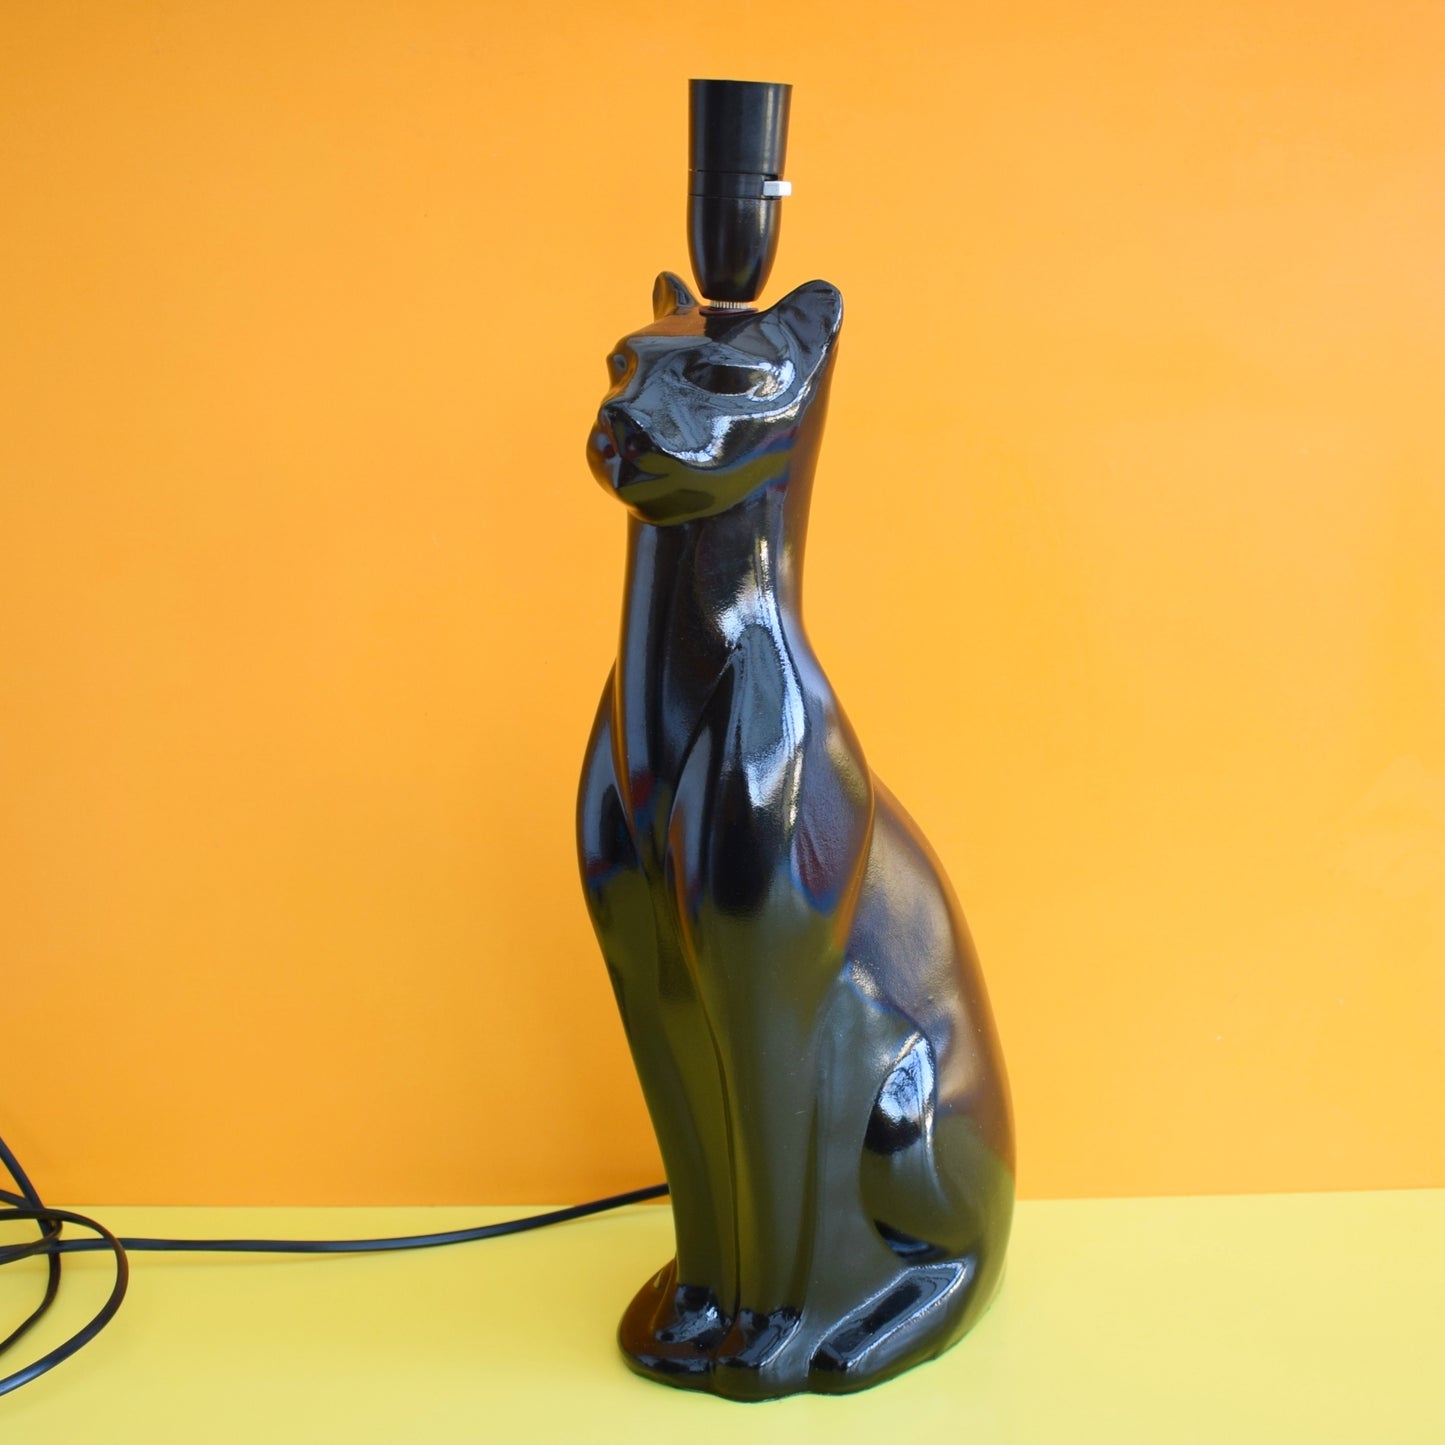 Vintage 1950s Cat Lamp - Heals Cat Style - Black